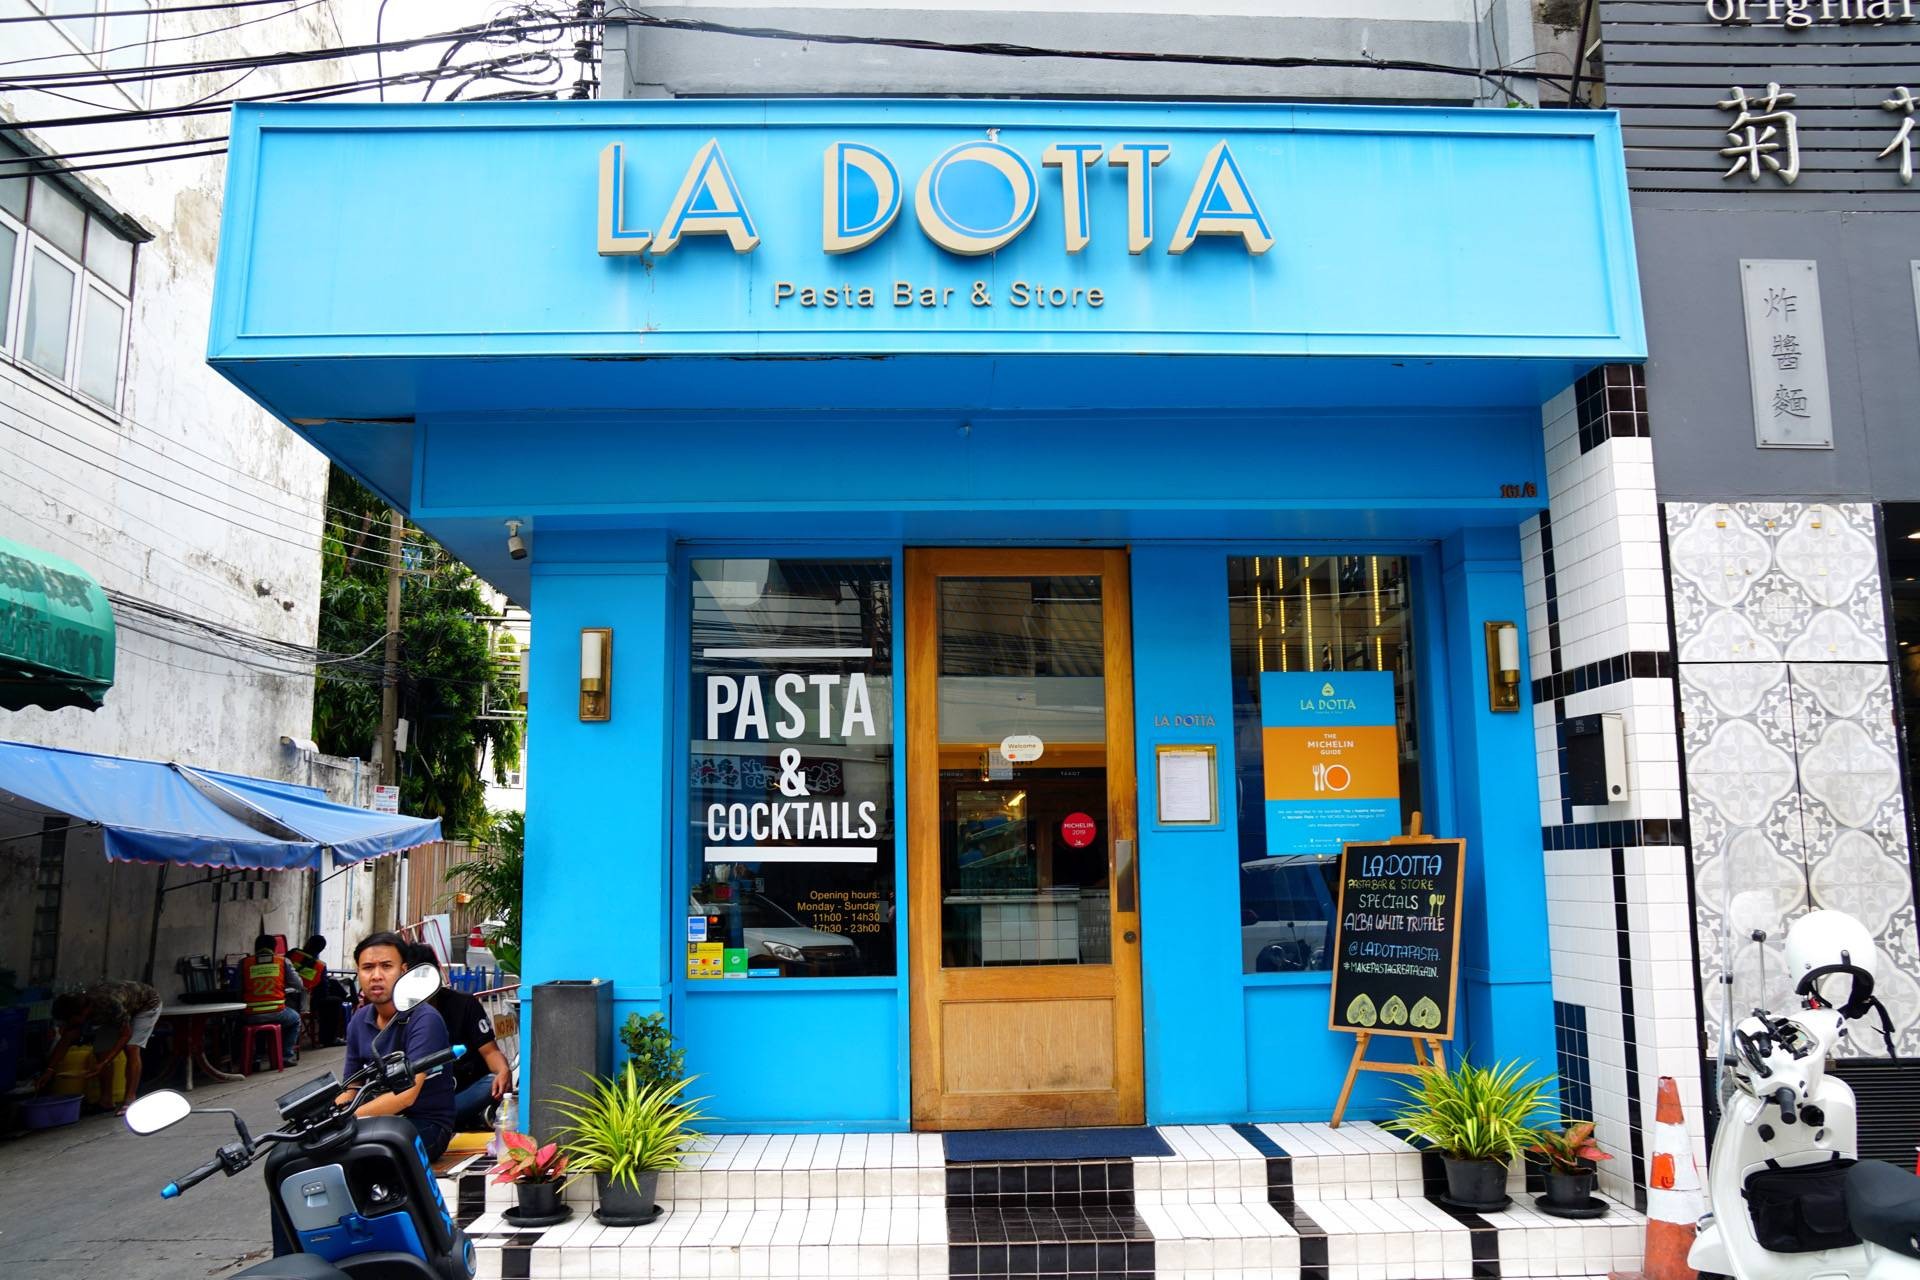 รีวิว La Dotta Pasta Bar & Store ( Thonglor ) - ลา ด็อตต้า  พาสต้าบาร์แอนด์สโตร์ ( สาขาทองหล่อ ) ทองหล่อ - ร้านพาสต้ารสเลิศ